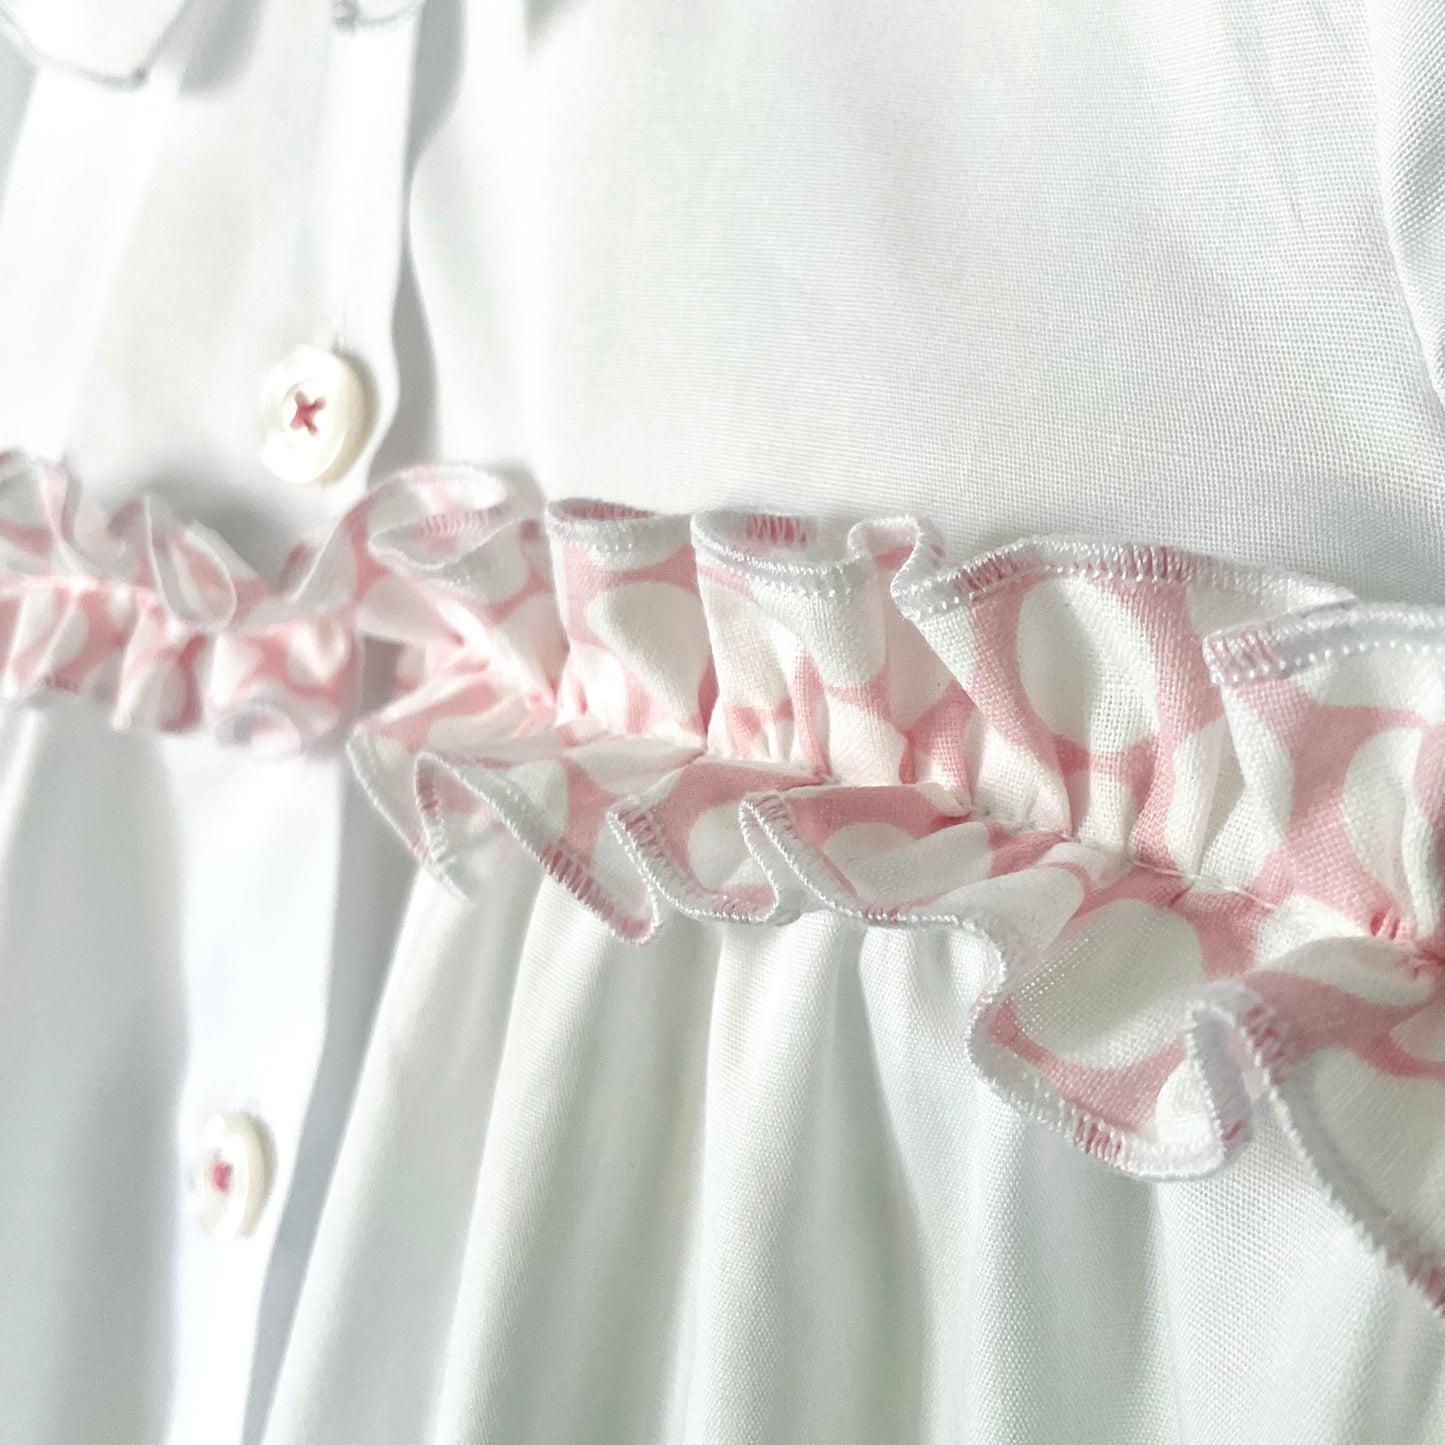 Il grembiulino con i pois rosa - Grembiule per asilo con rouche a pois rosa in cotone bianco.